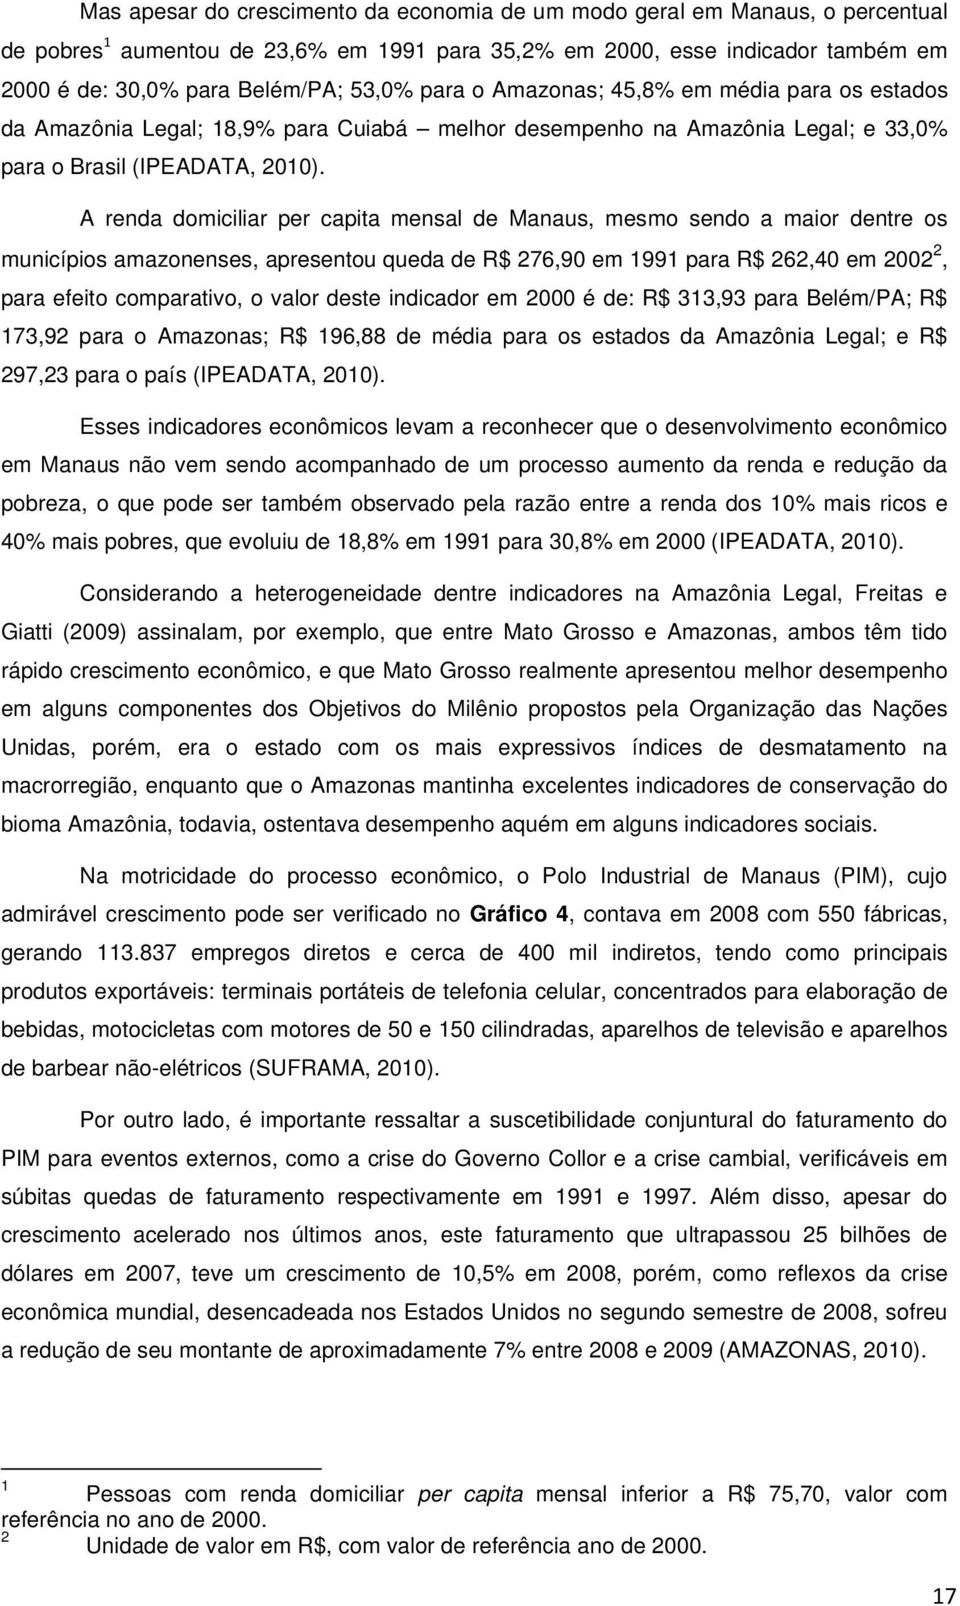 A renda domiciliar per capita mensal de Manaus, mesmo sendo a maior dentre os municípios amazonenses, apresentou queda de R$ 276,90 em 1991 para R$ 262,40 em 2002 2, para efeito comparativo, o valor